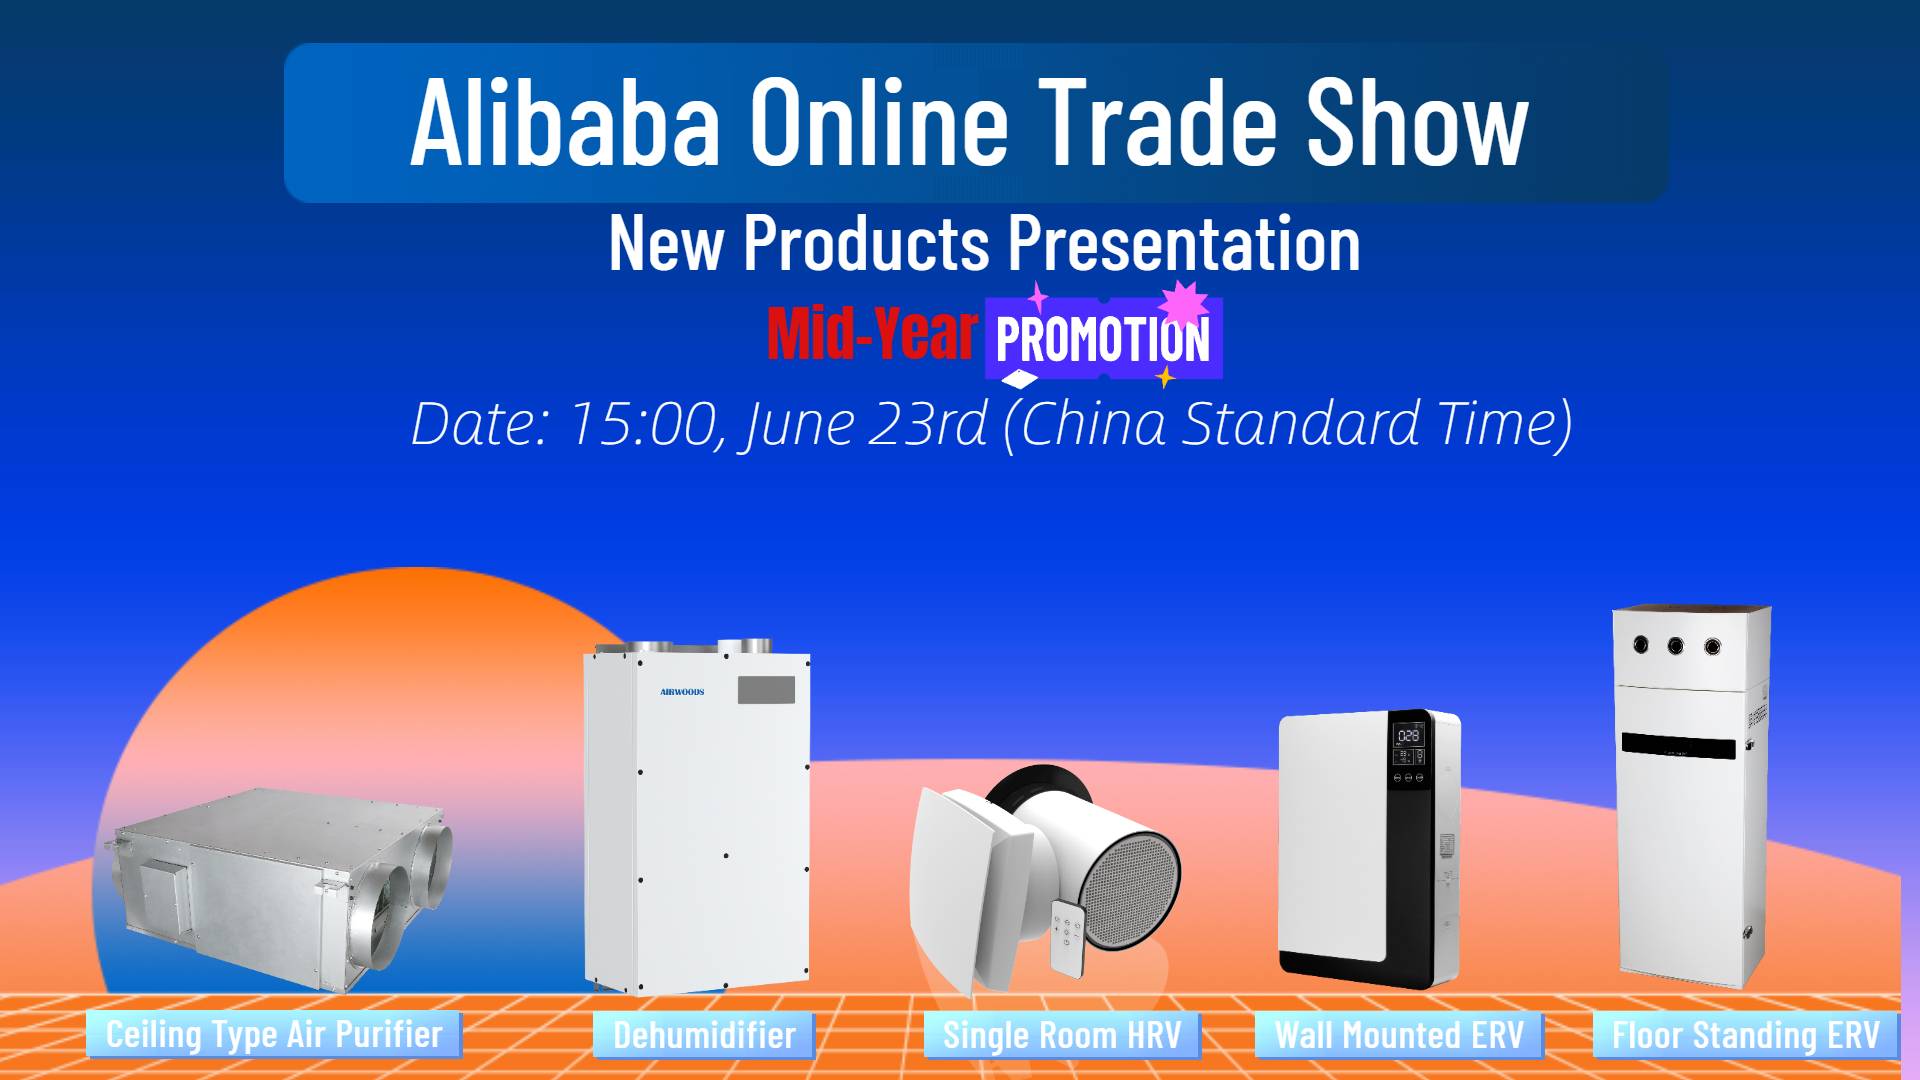 Orari i shfaqjeve të drejtpërdrejta të shfaqjeve online të Alibaba për qershor 2021